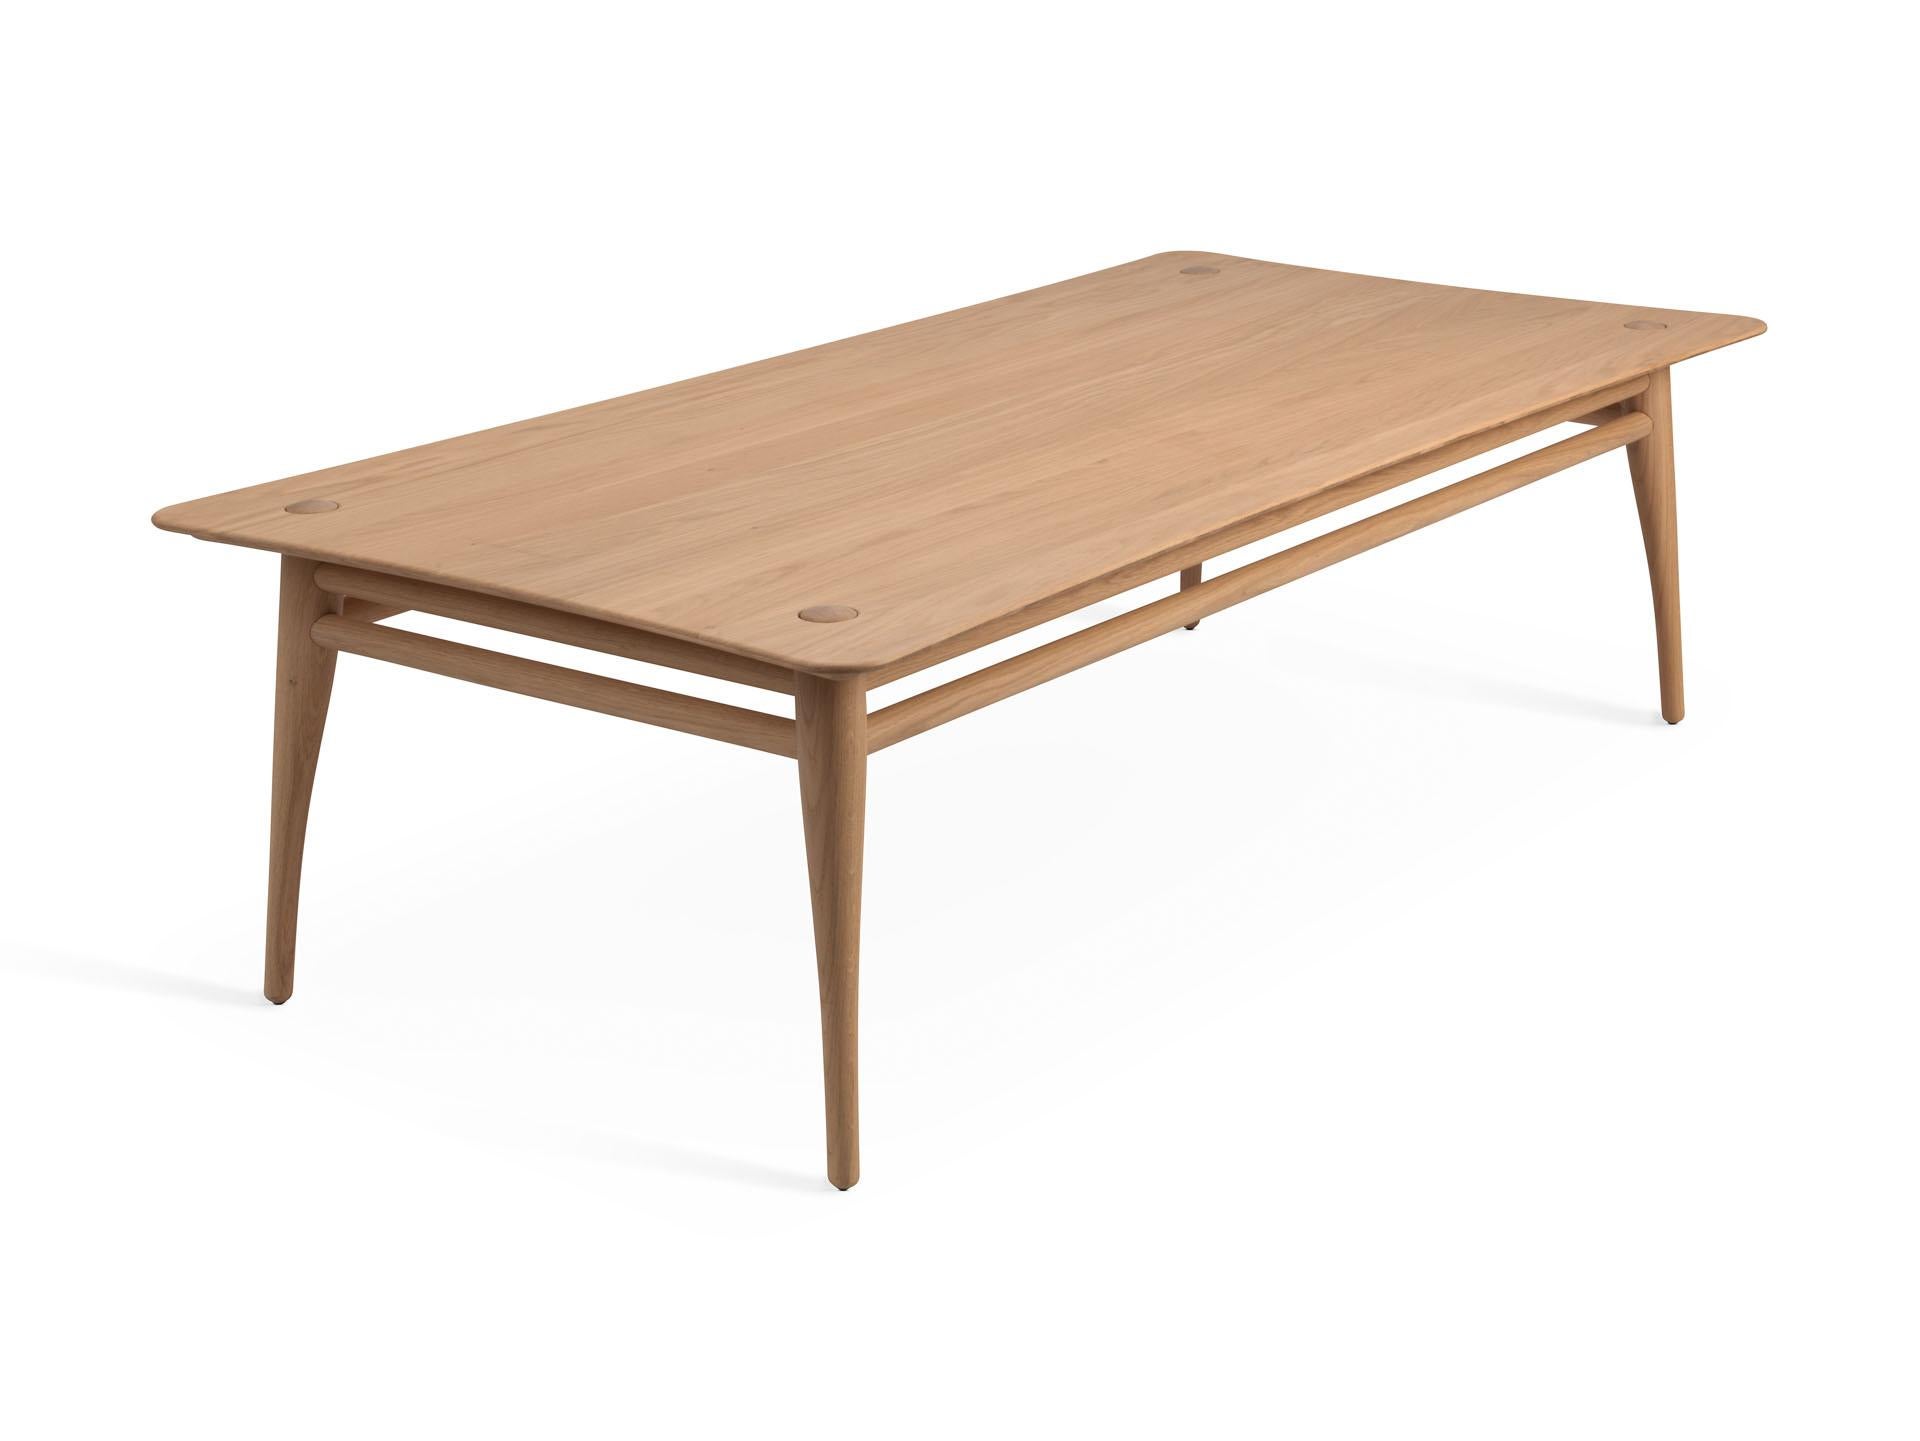 Chilgrove est une série de tables basses fabriquées à partir d'un cadre et d'un plateau en bois massif légèrement incurvé. Le cadre en bois situé sous la surface comporte quatre pieds de forme organique qui dépassent élégamment de la surface de la